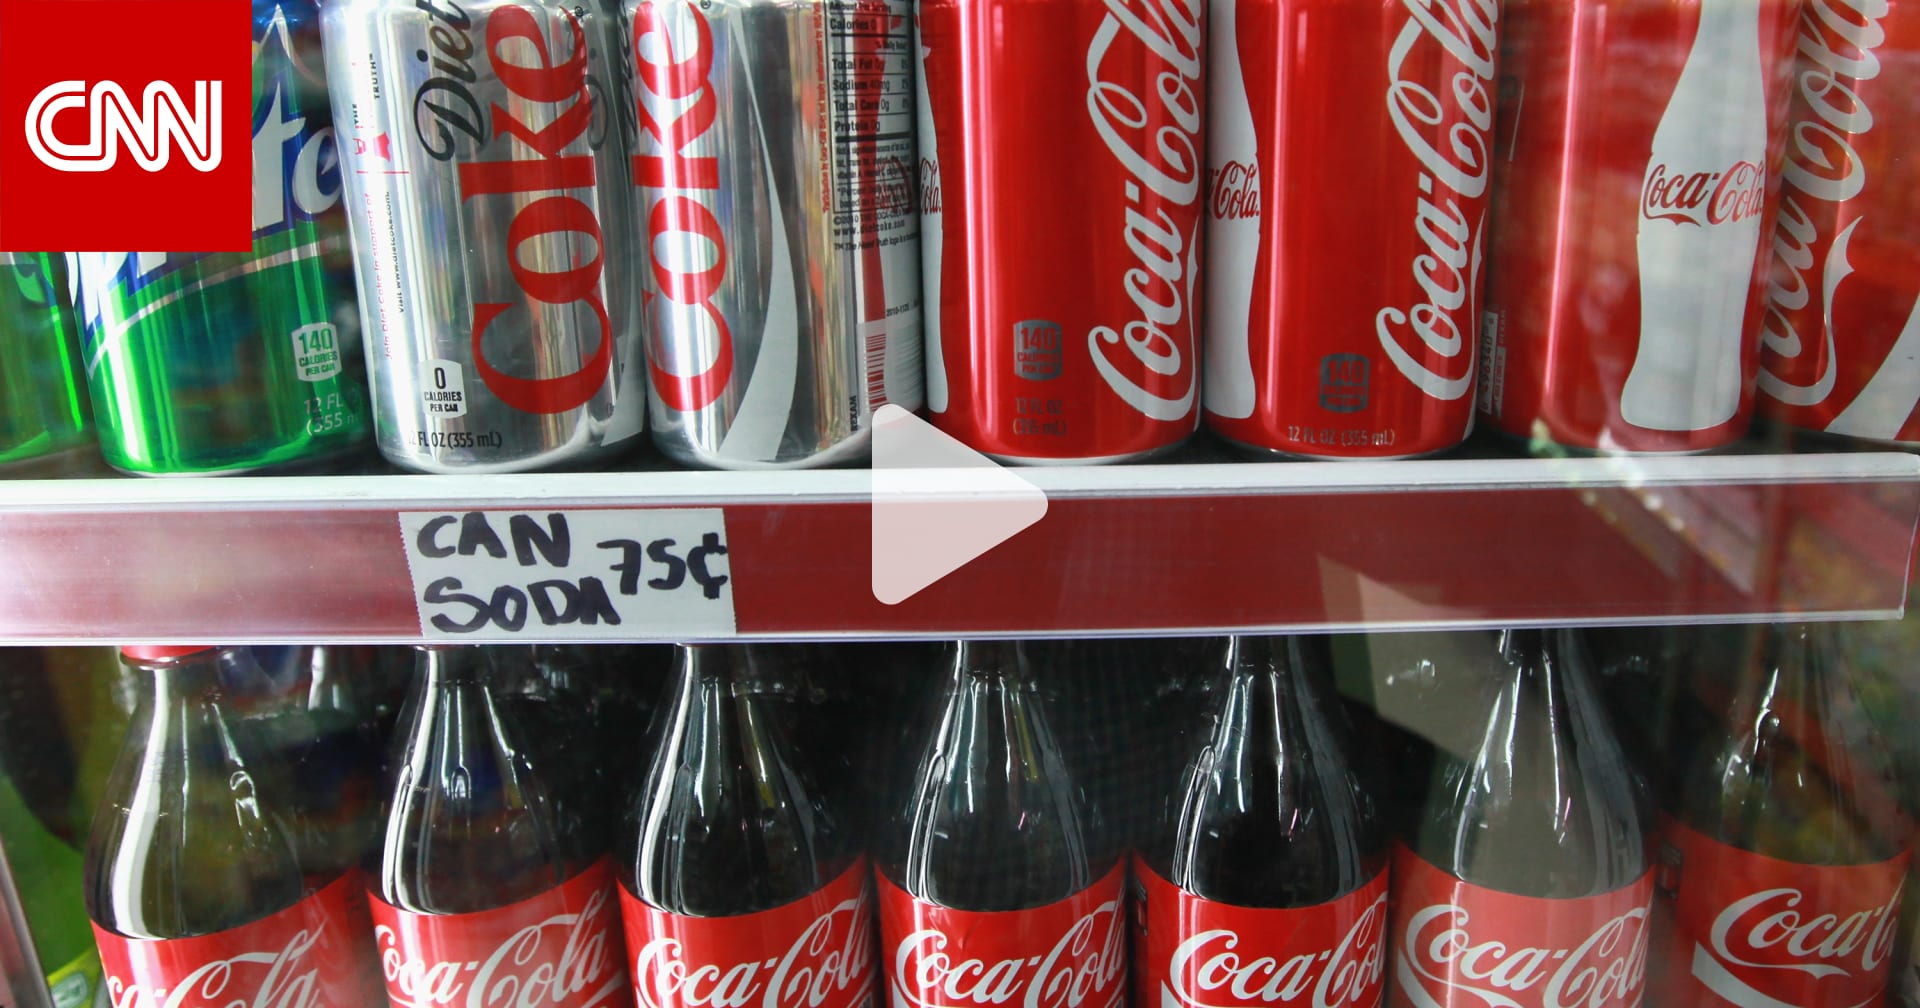 الرئيس التنفيذي لشركة كوكا كولا يتحدث عن سبب تخلصه من المشروبات المحببة لكثير من الناس